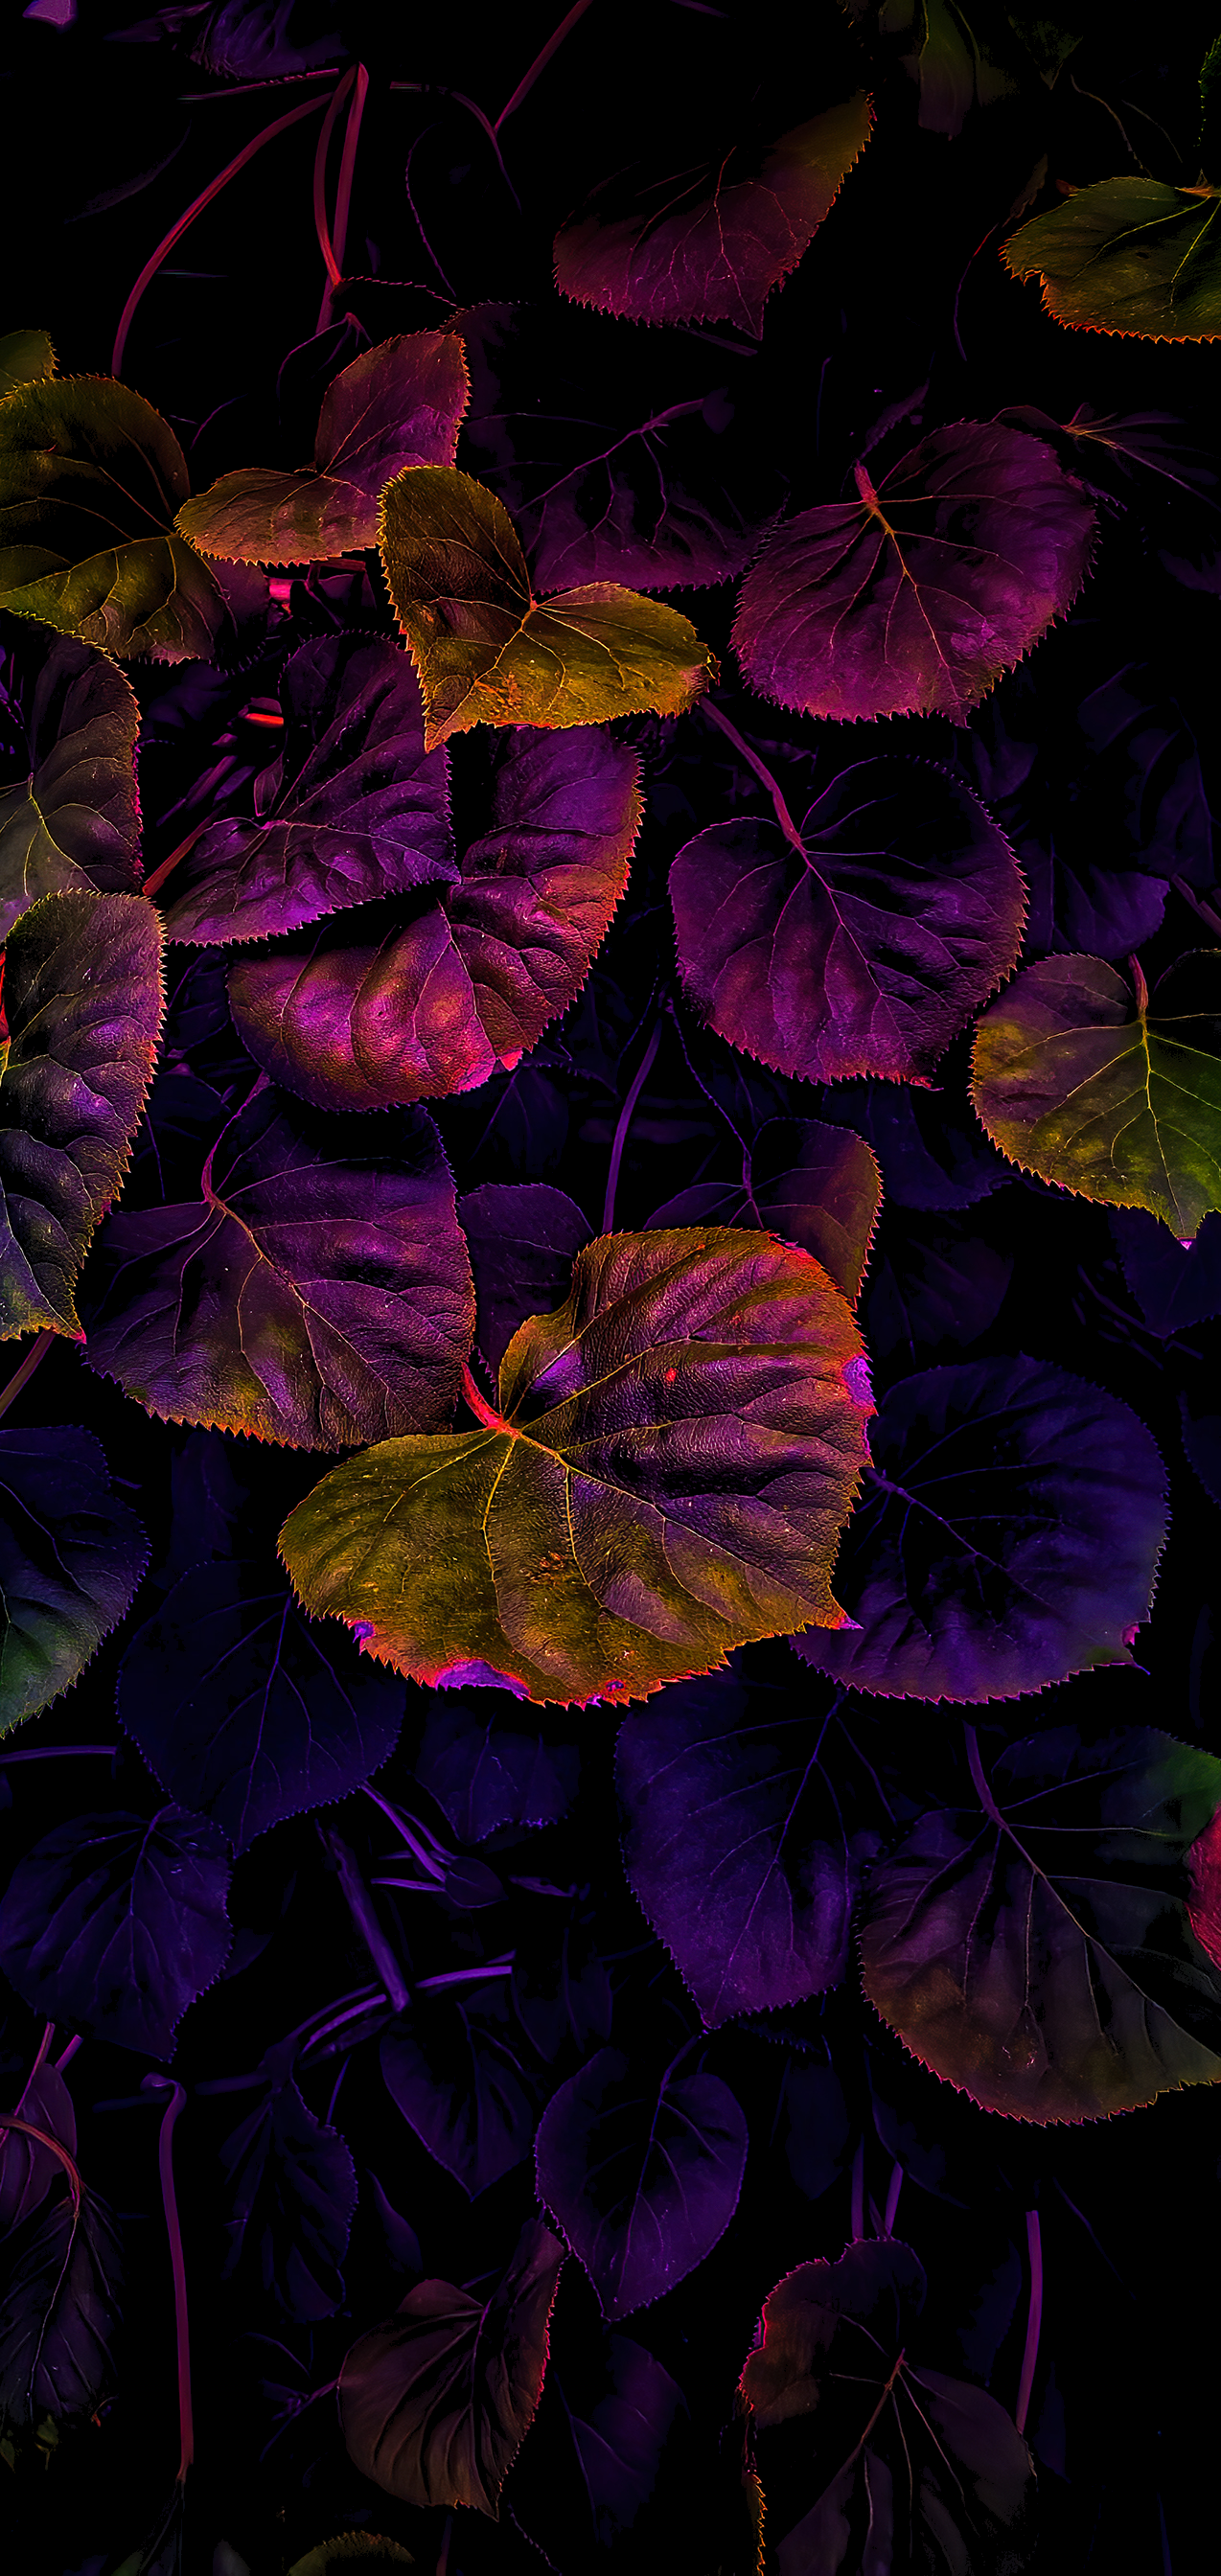 Amoled leaves [1274×2688]